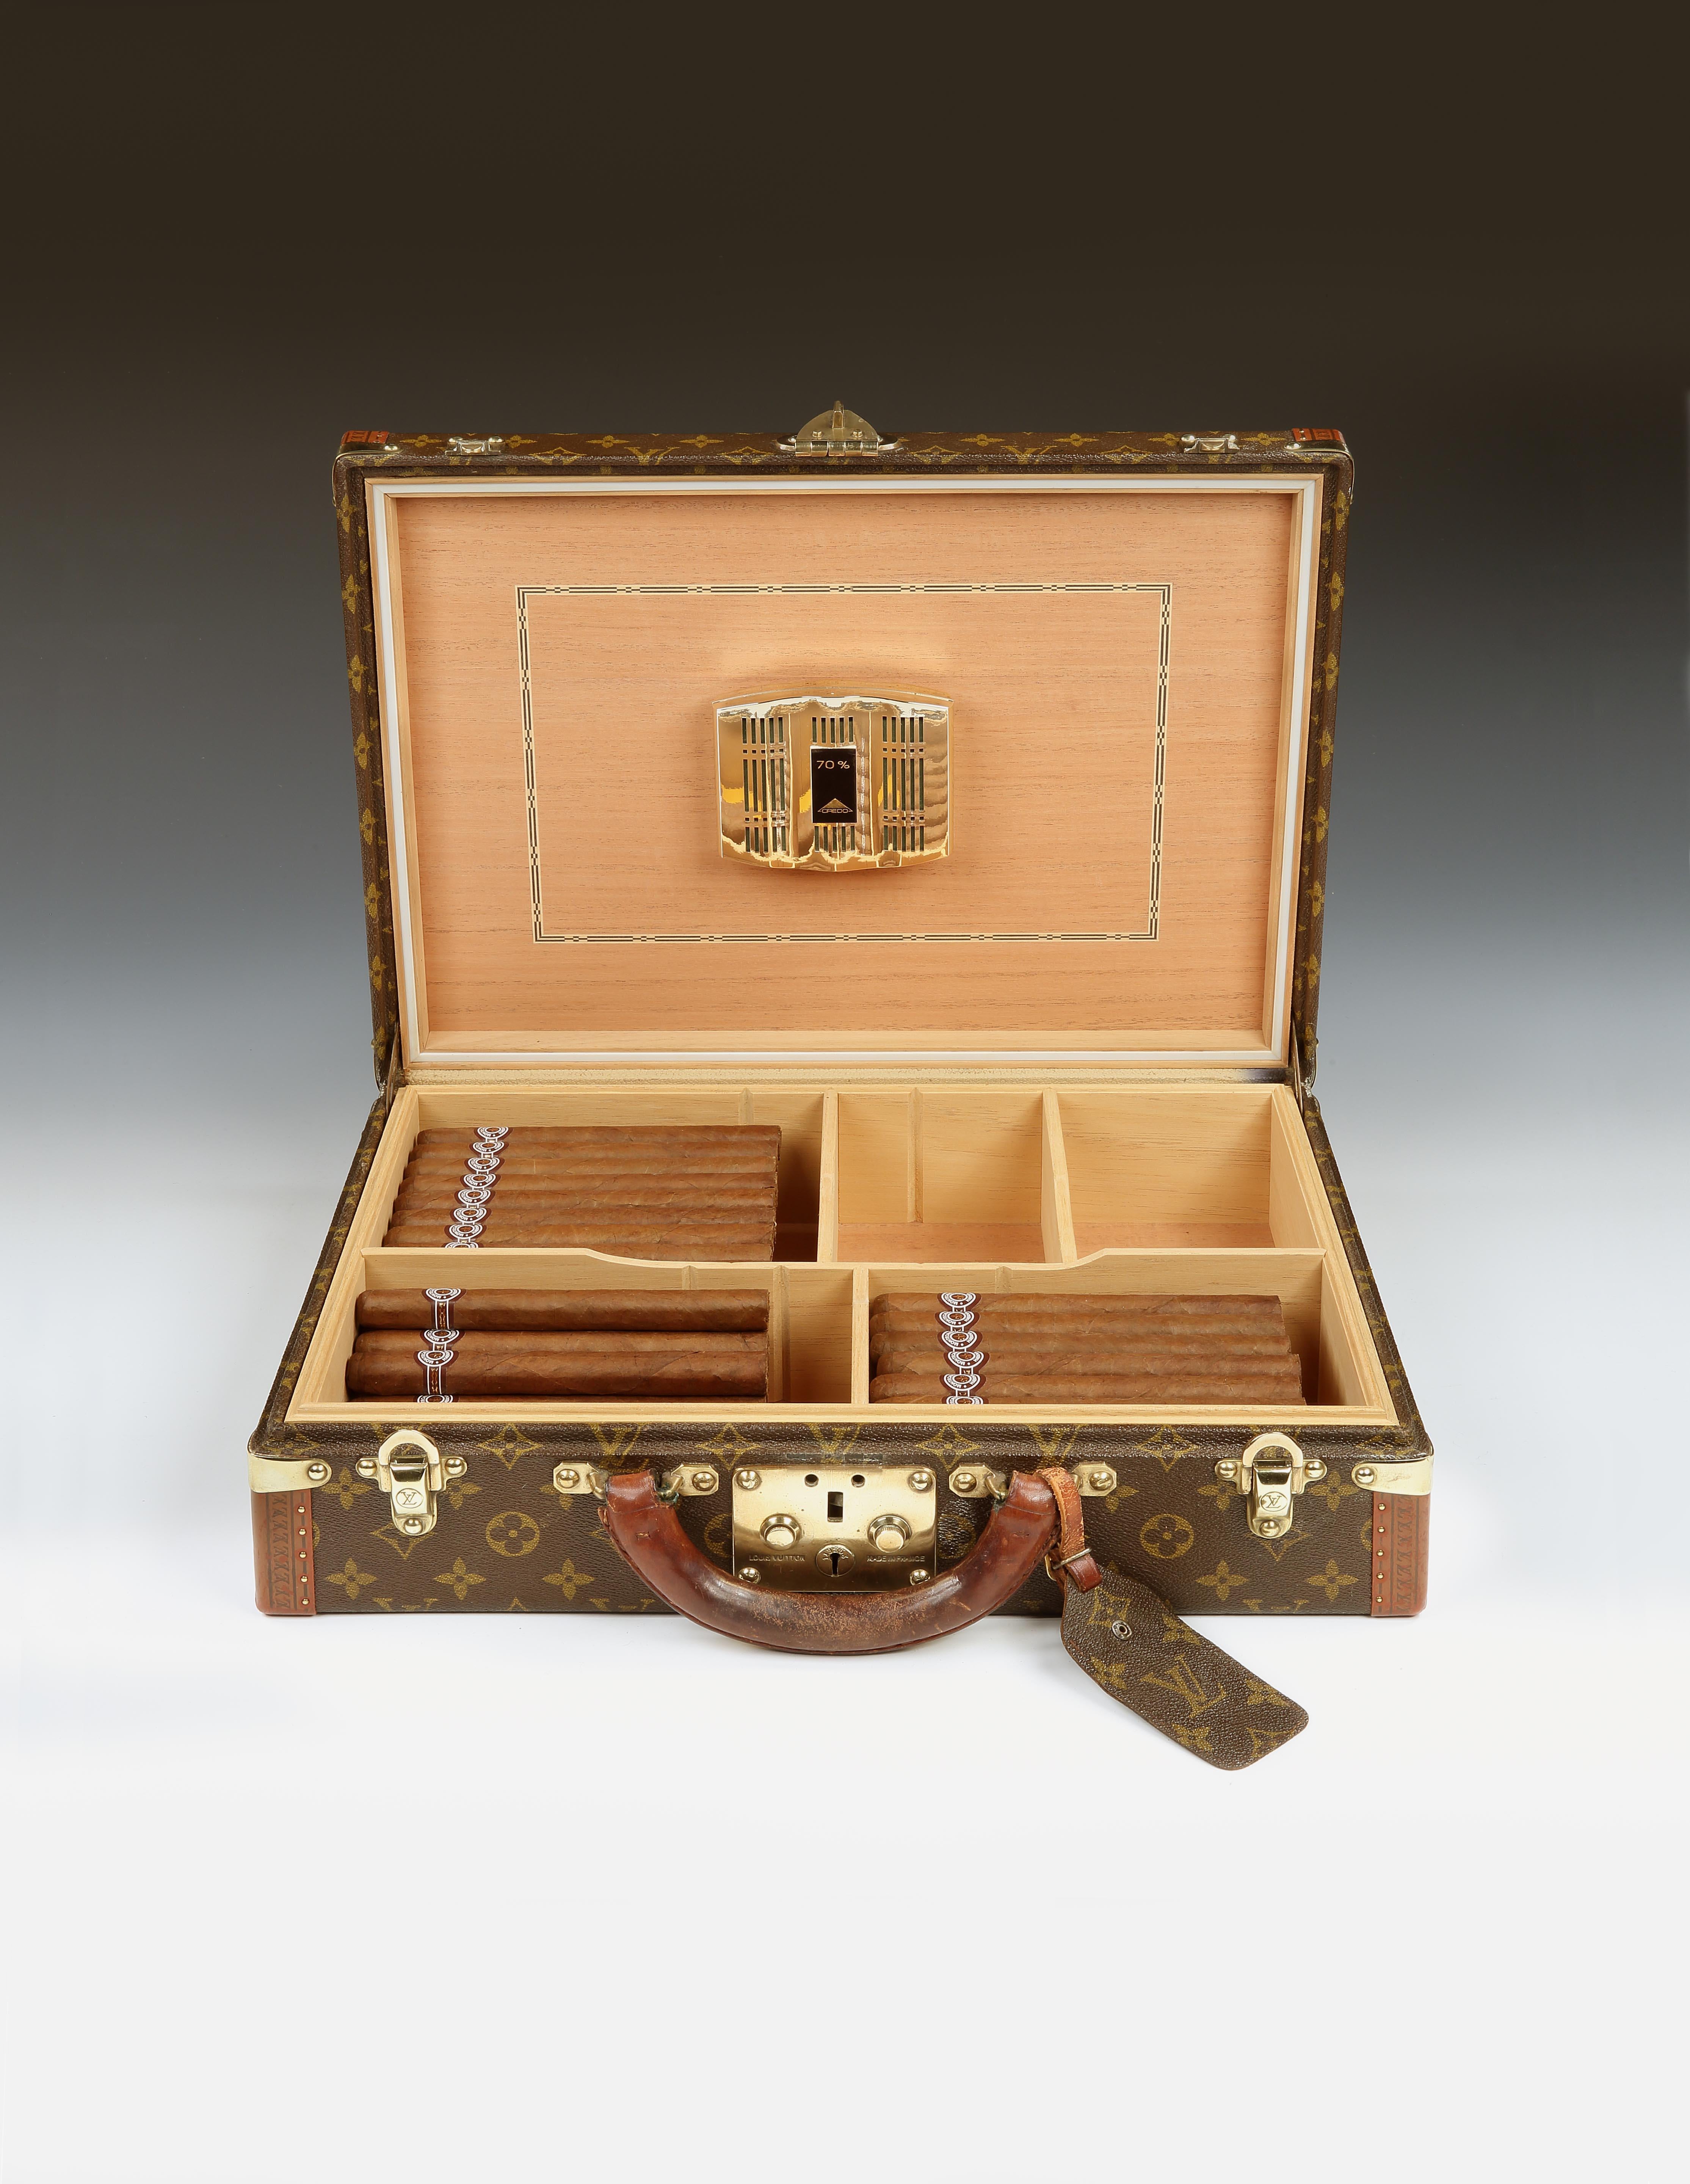 LOUIS VUITTON Monograph Box Authentic Louis Vuitton Phone Box by Virgil  Abloh 